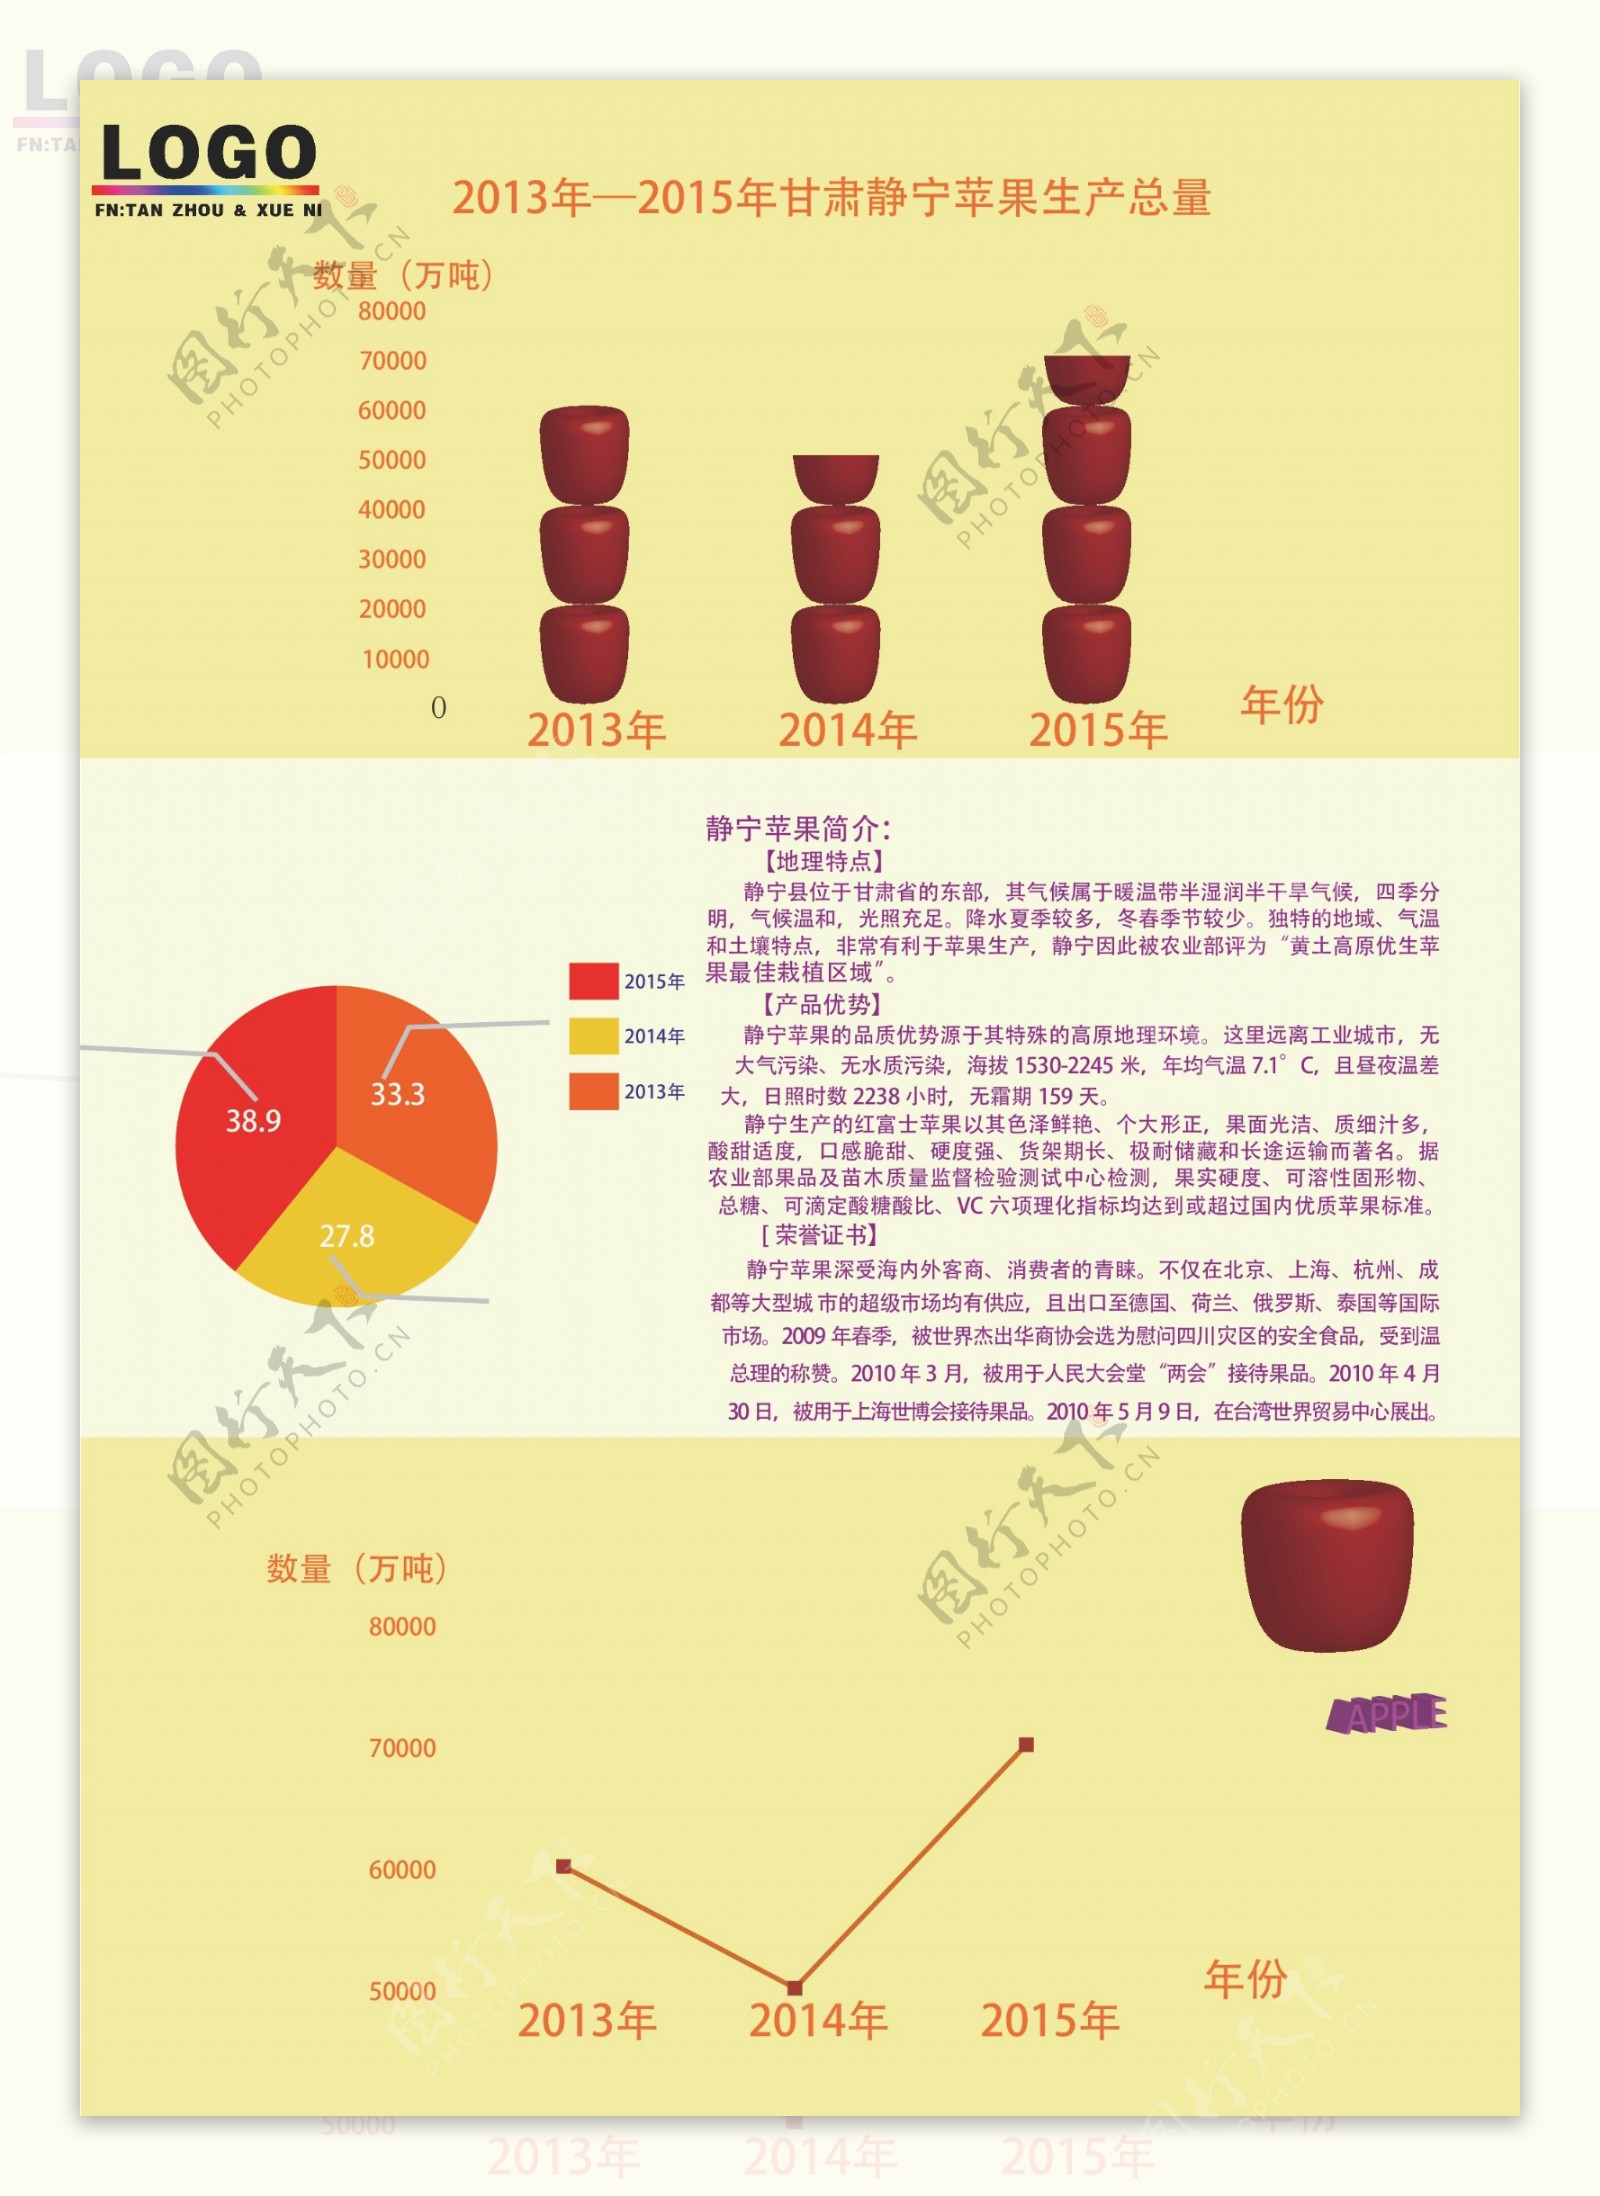 2015年甘肃苹果的总产量图表图片